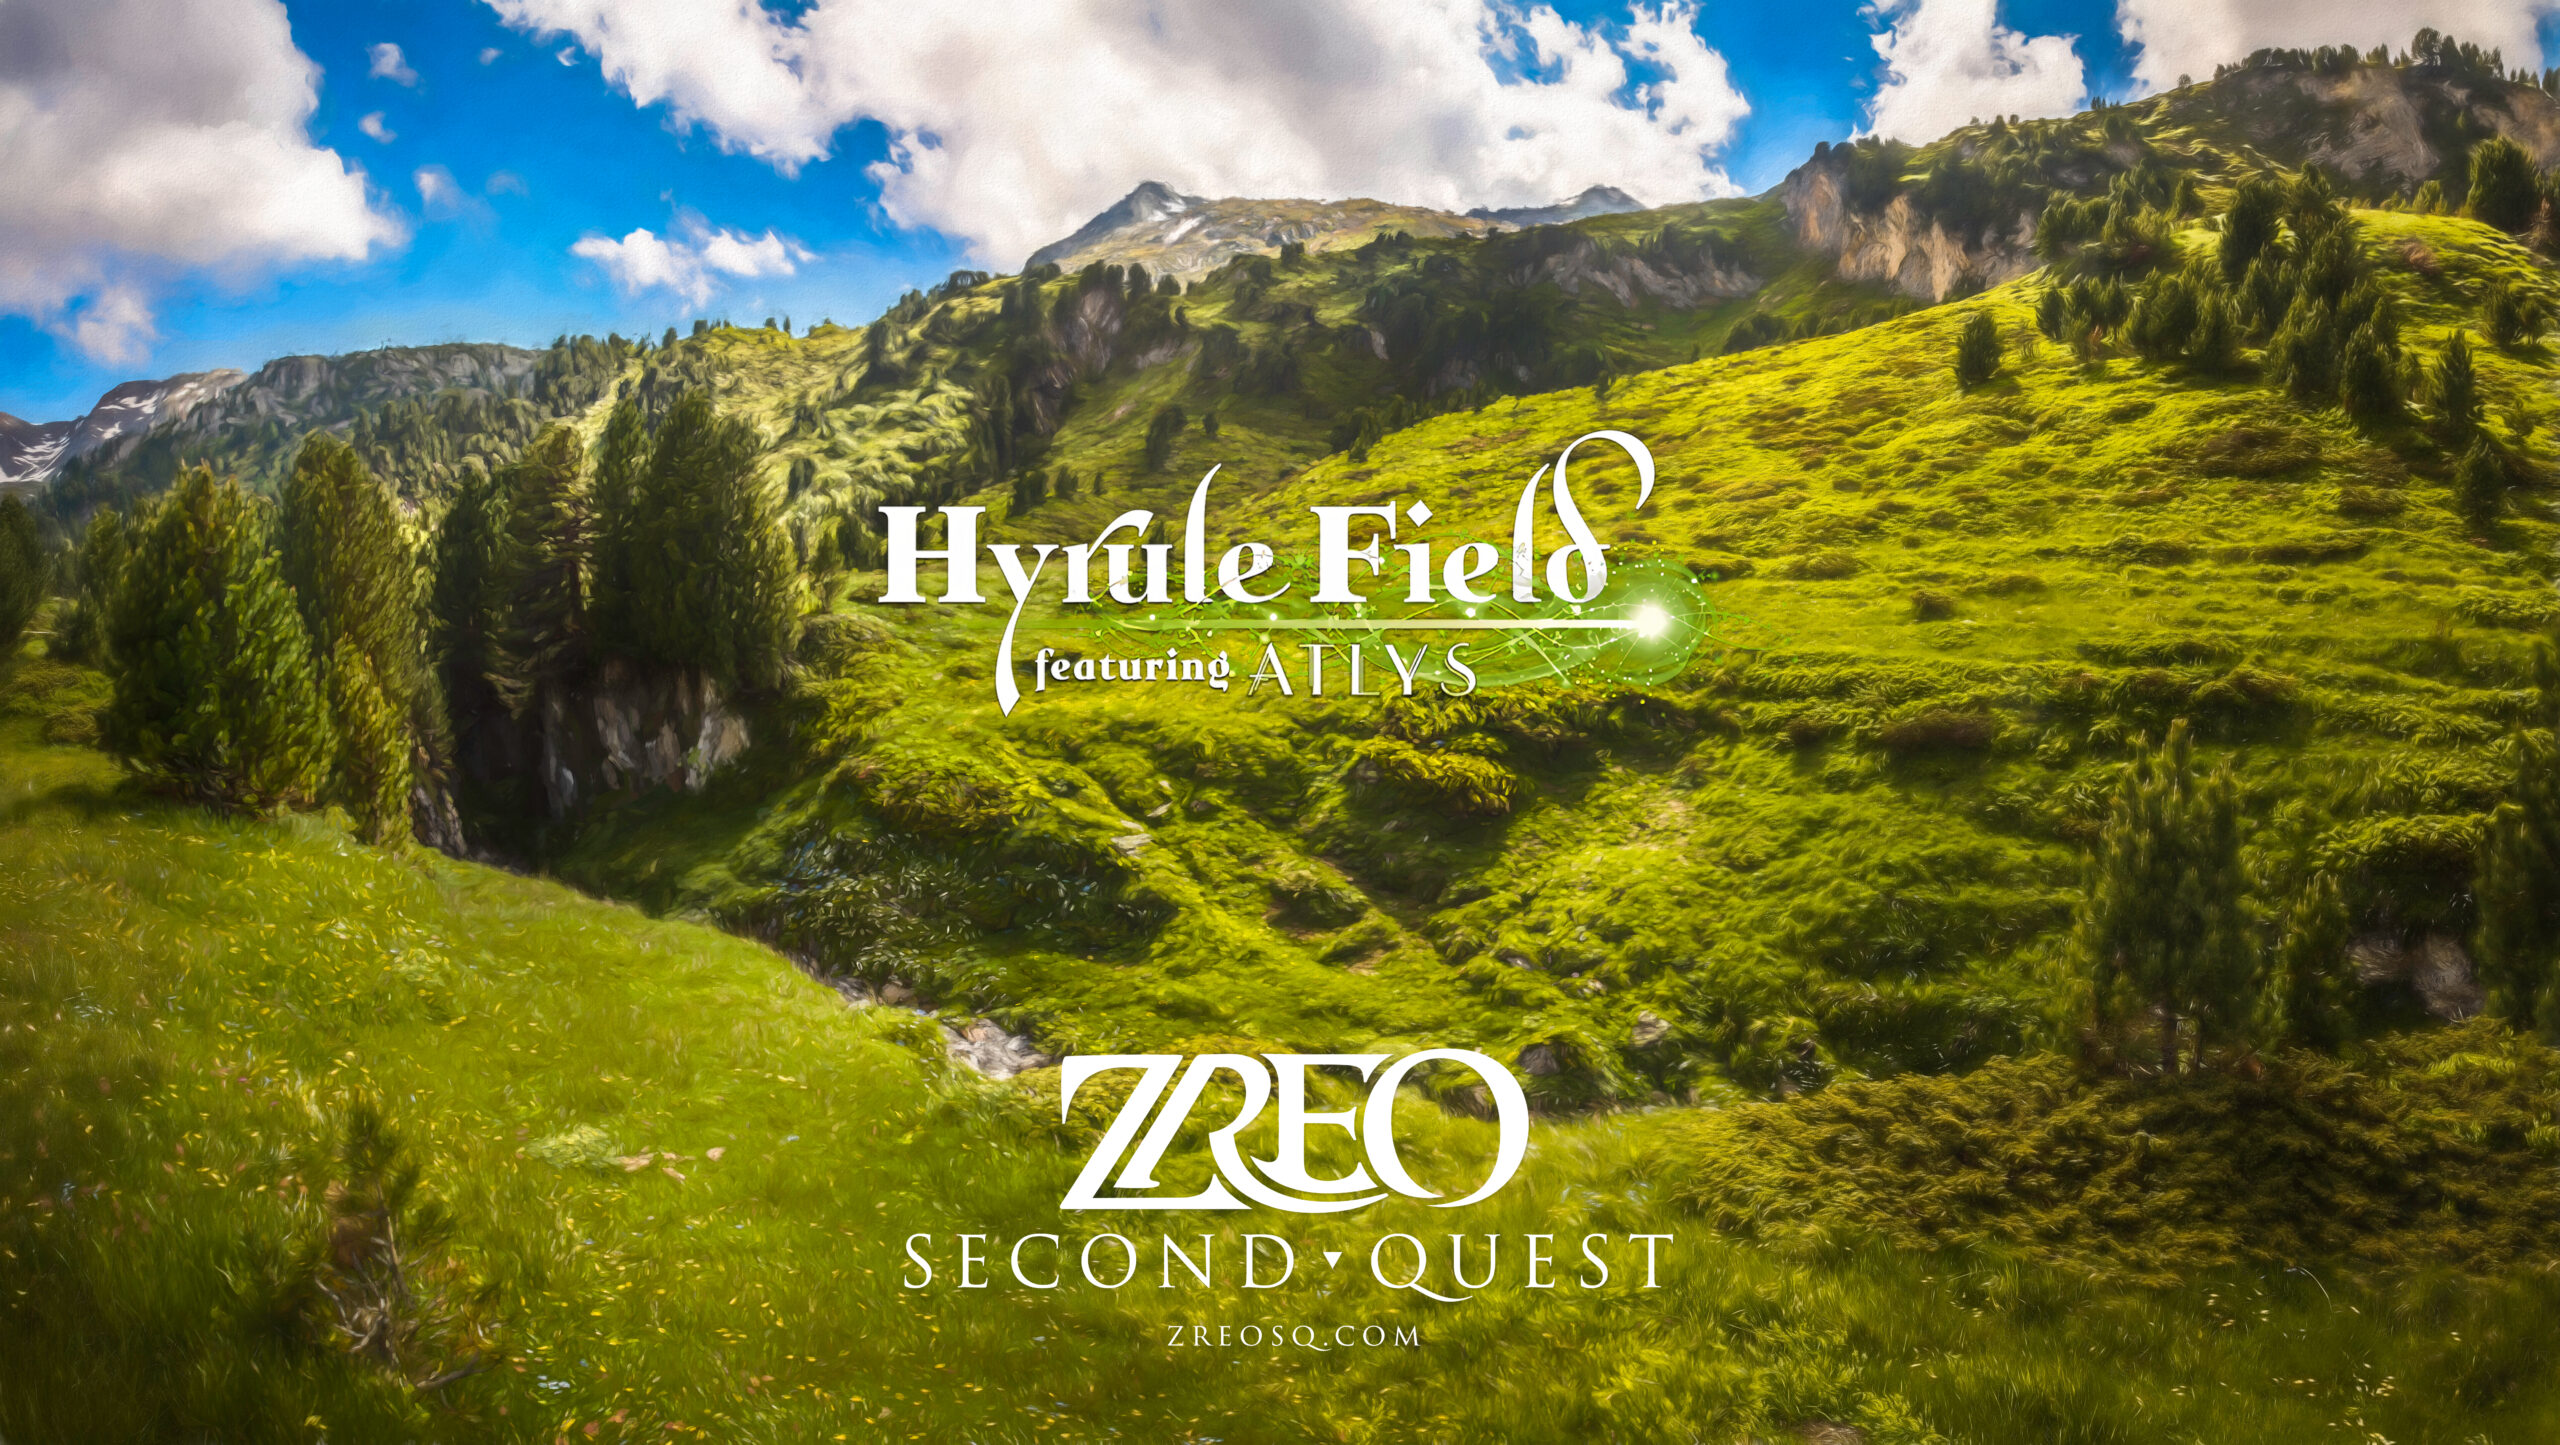 ZREO Hyrule Field